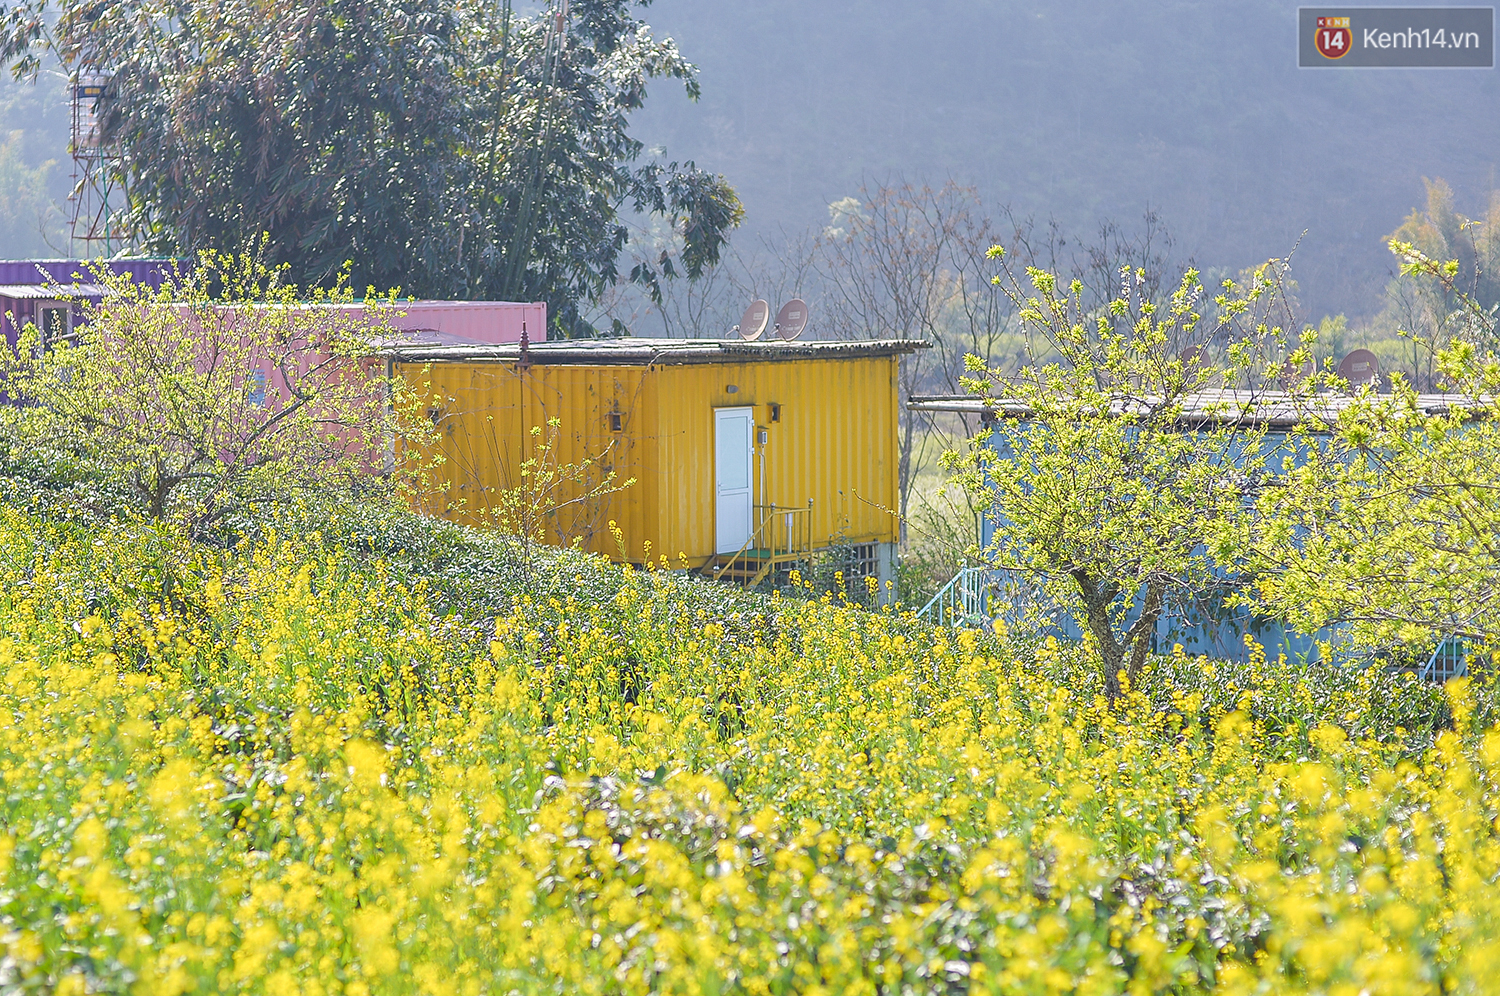 Lên Mộc Châu, ngủ nhà container đầy sắc màu giữa rừng mận trắng, cải vàng - Ảnh 10.